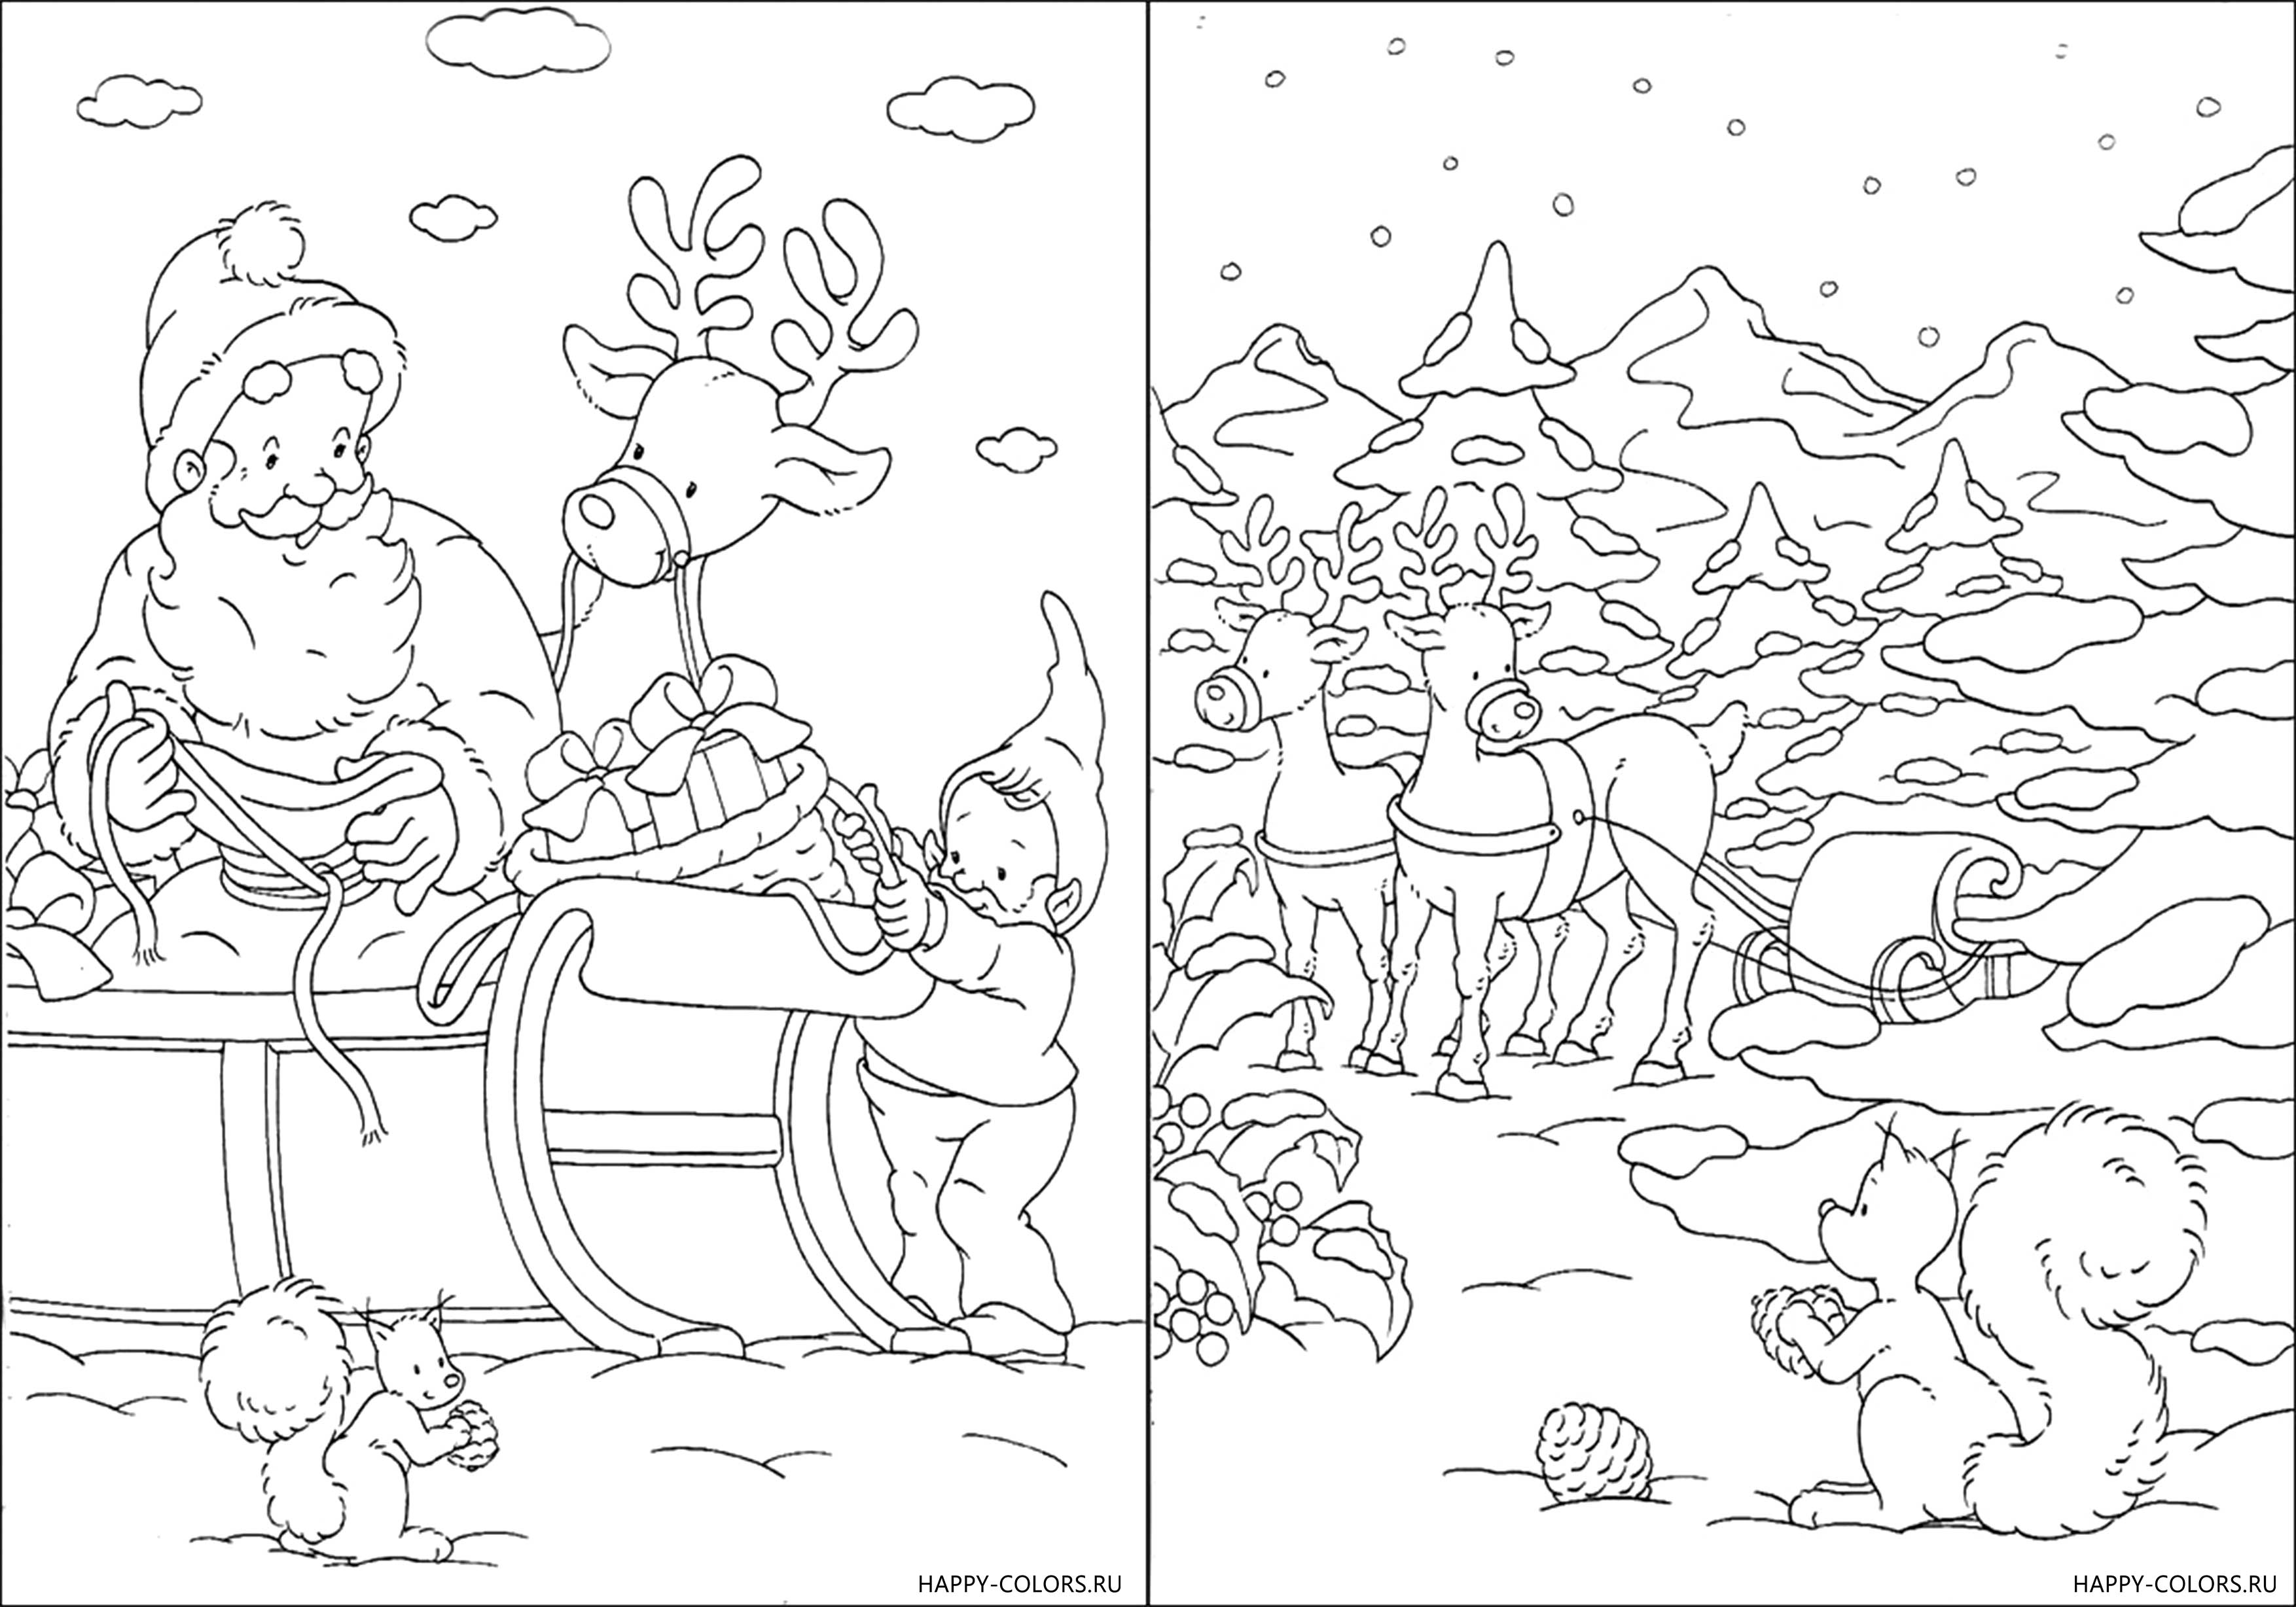 Дед Мазай и зайцы раскраска для детей